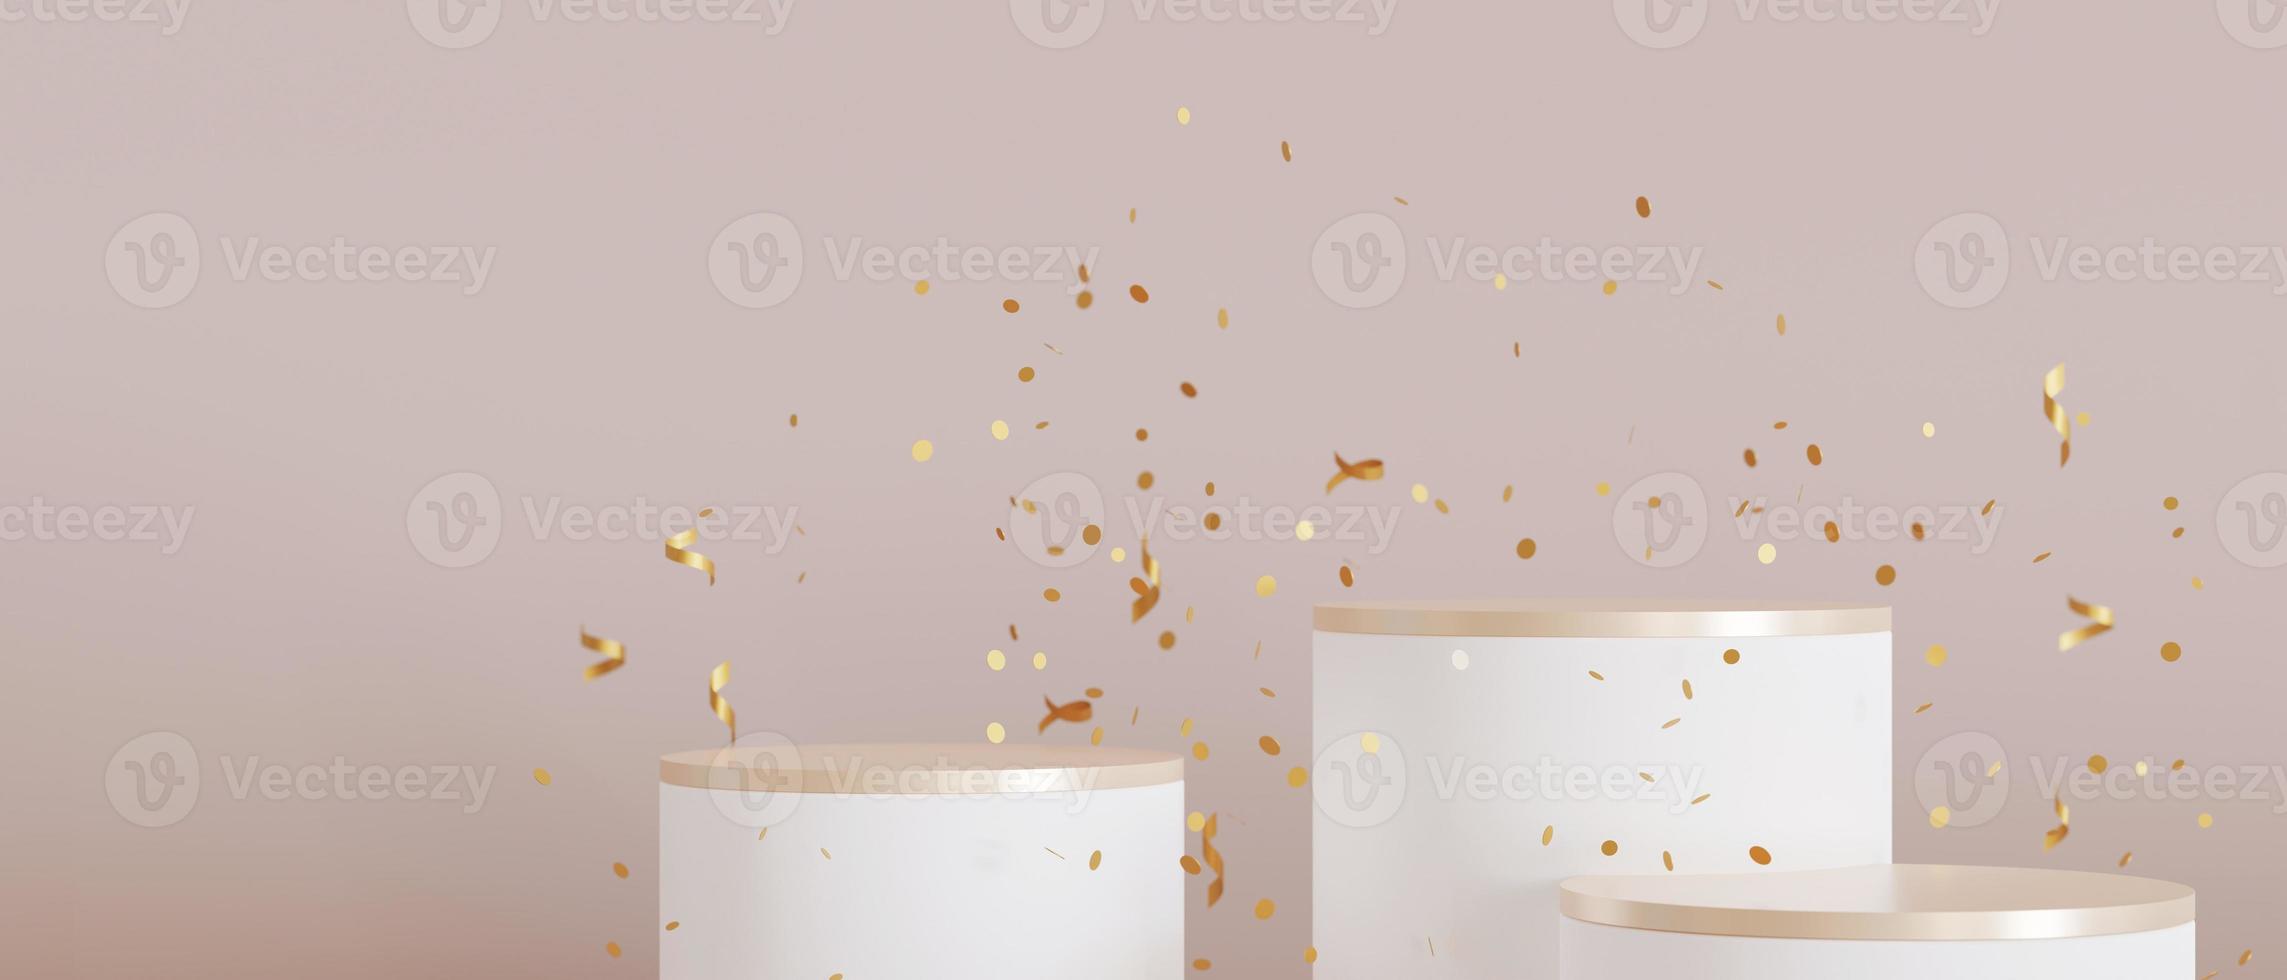 conjunto de podios blancos y dorados con confeti cayendo sobre fondo beige. elegantes podios para productos, presentación cosmética. Bosquejo. pedestal, plataforma para productos de belleza. escena vacía. procesamiento 3d foto